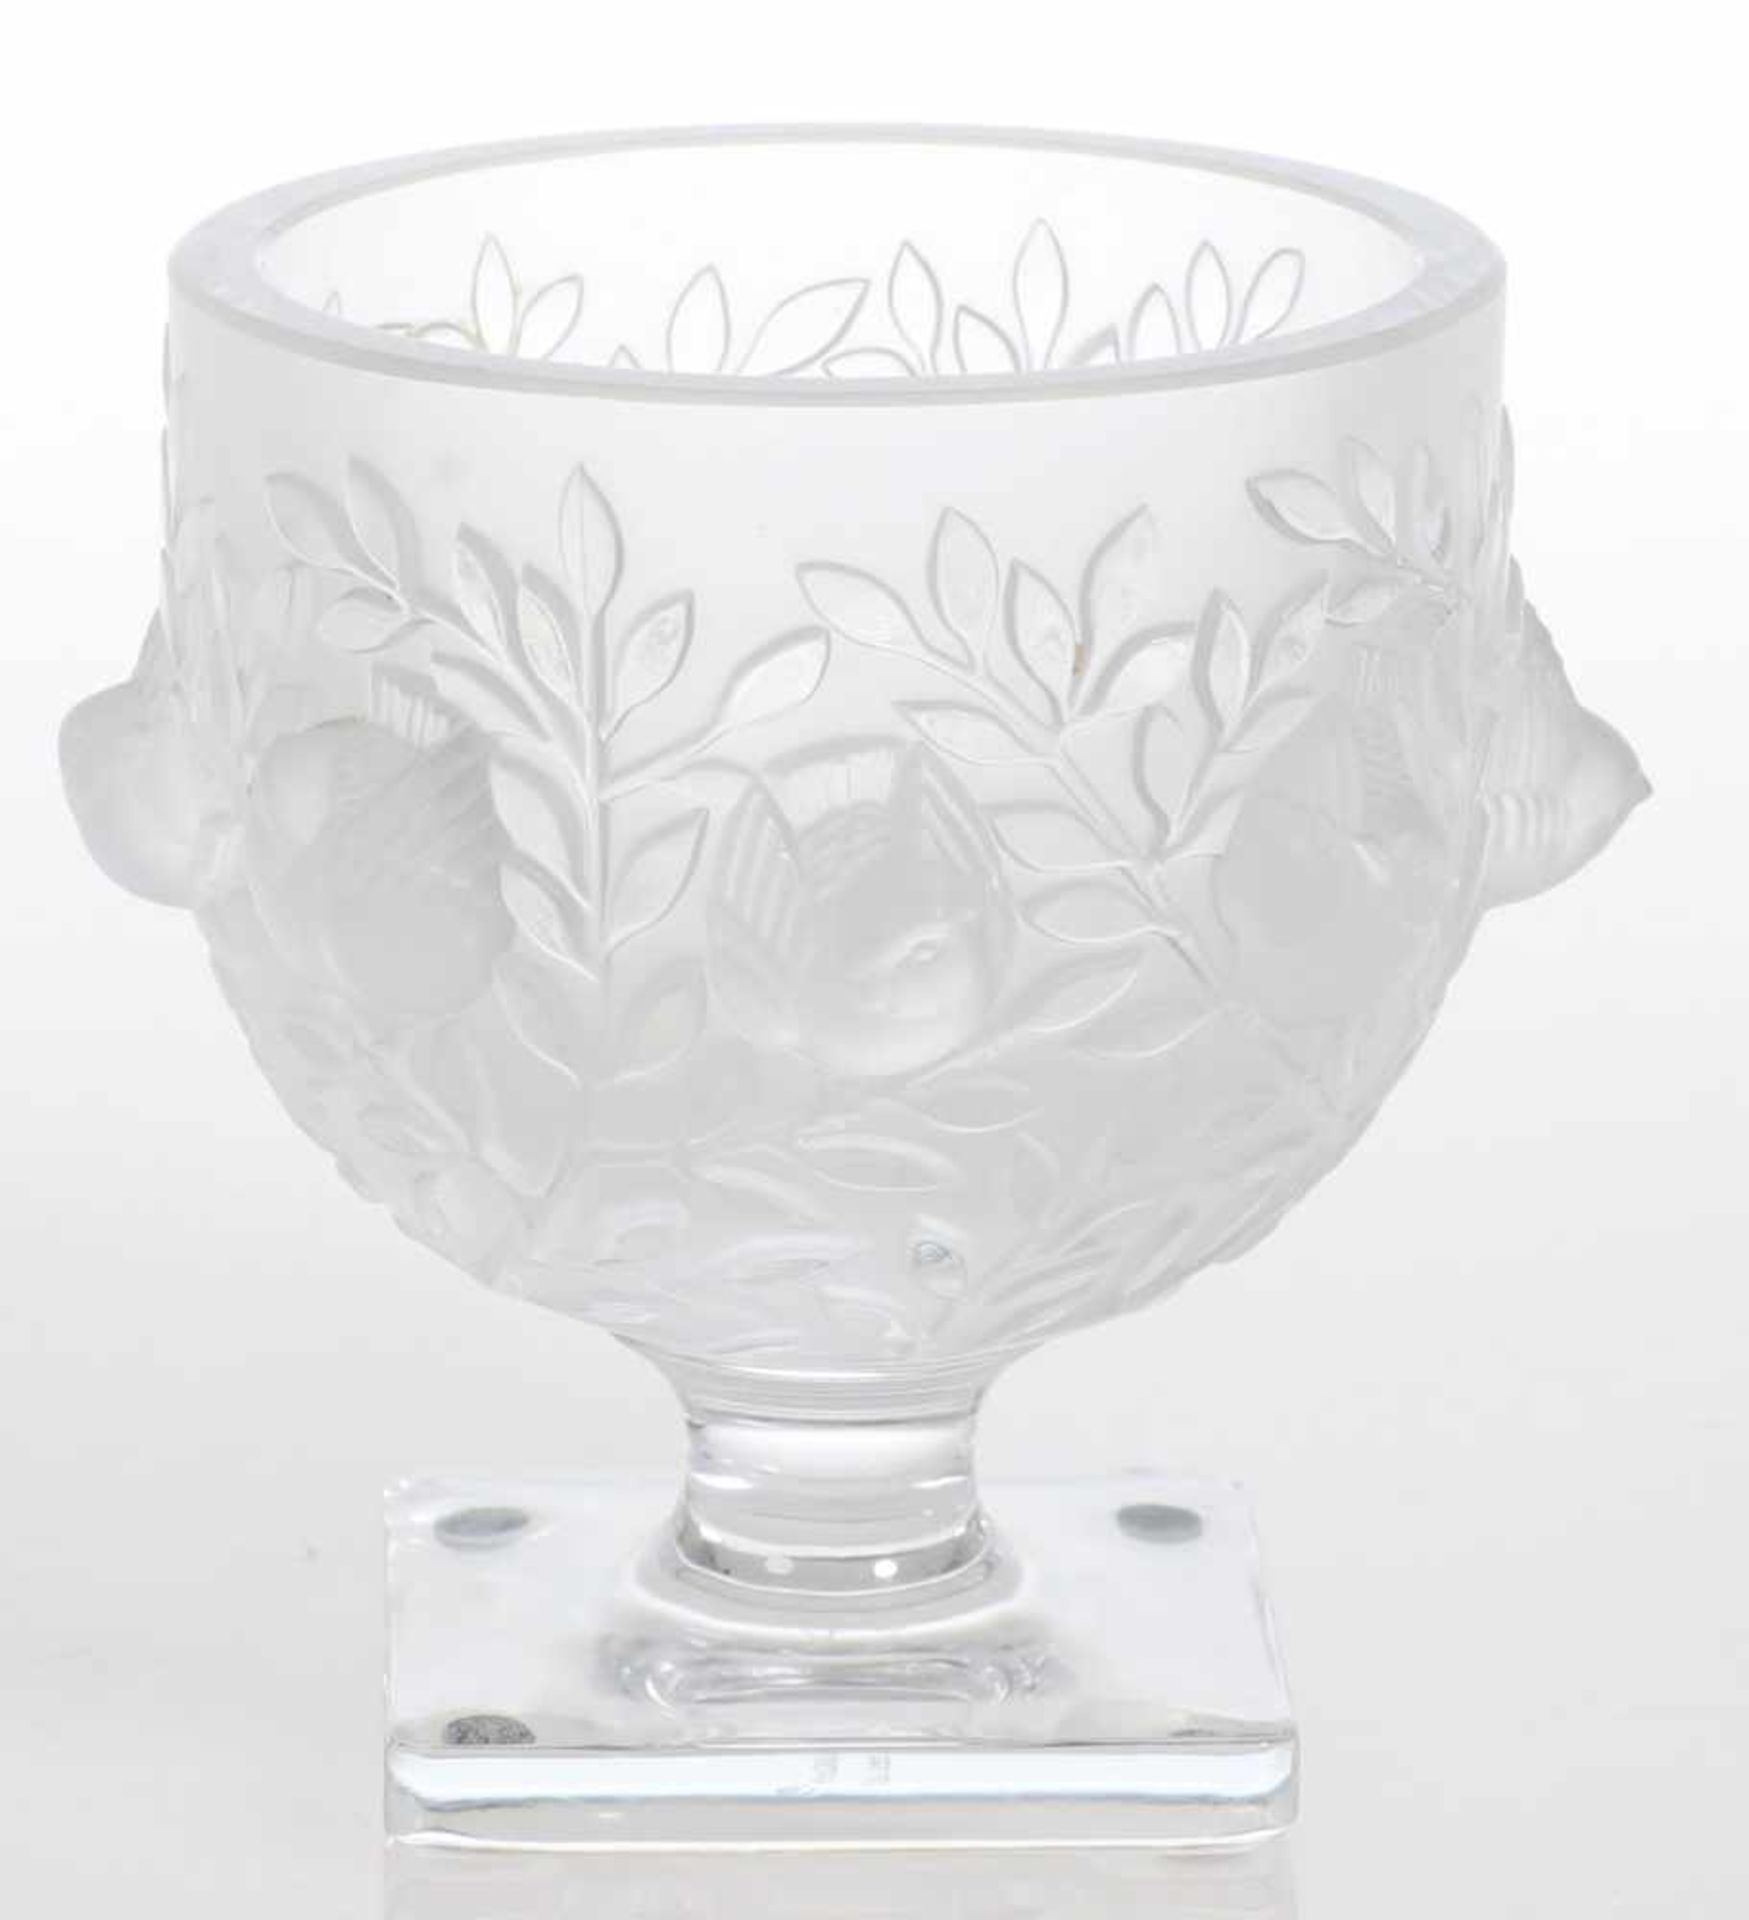 Vase ElisabethLalique, Wingen-sur-Moder. Farbloses Glas, formgepresst, z. T. mattiert. Unter dem - Bild 2 aus 2